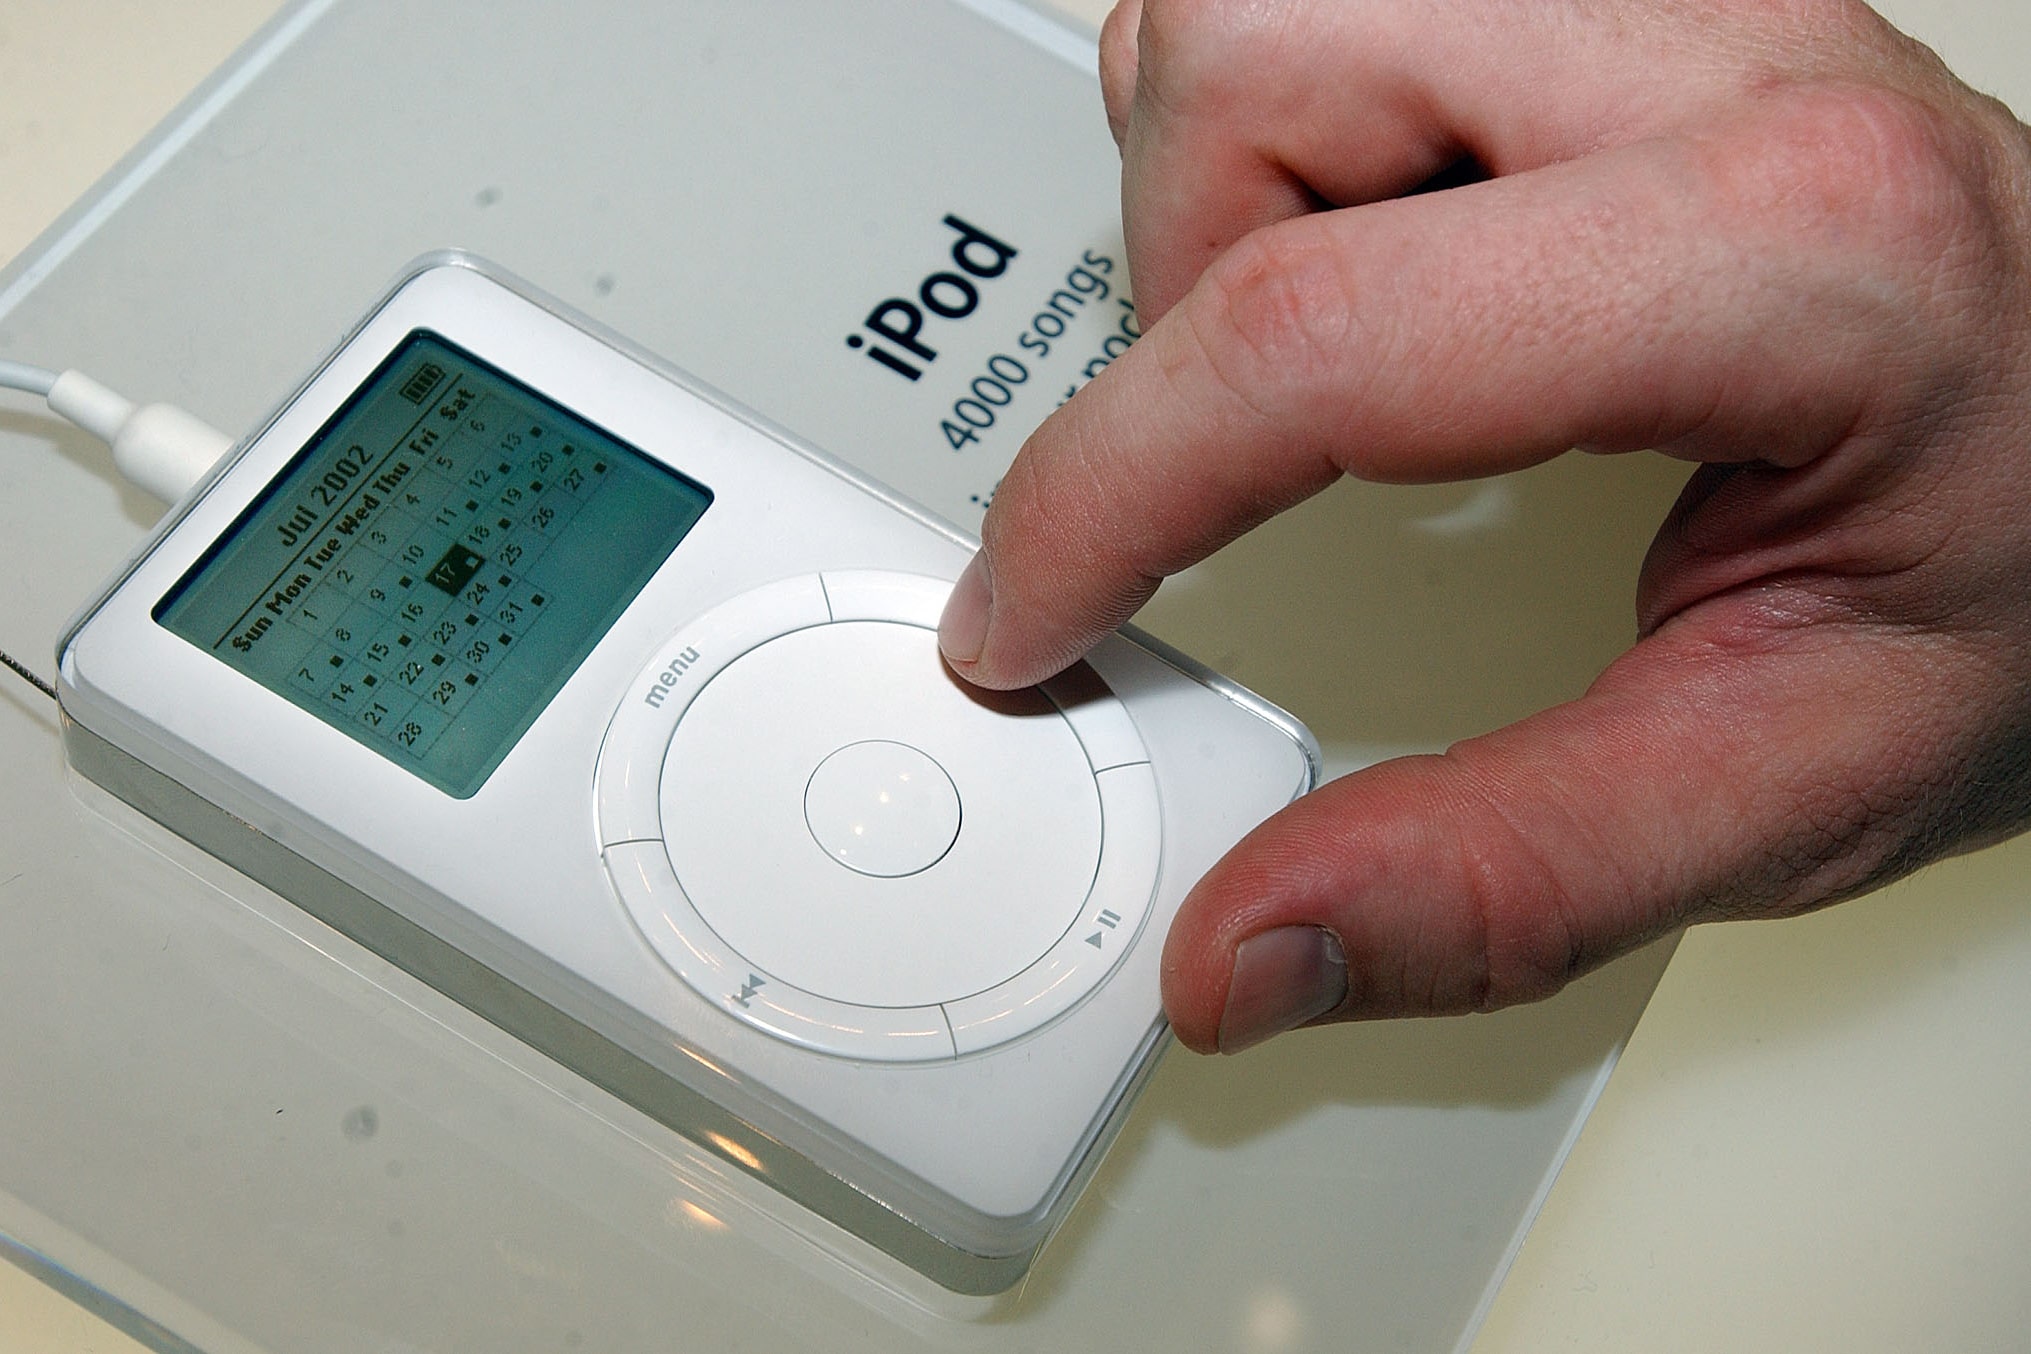 Uudishimu: iPod valmis ja käivitati vaid kümne kuuga